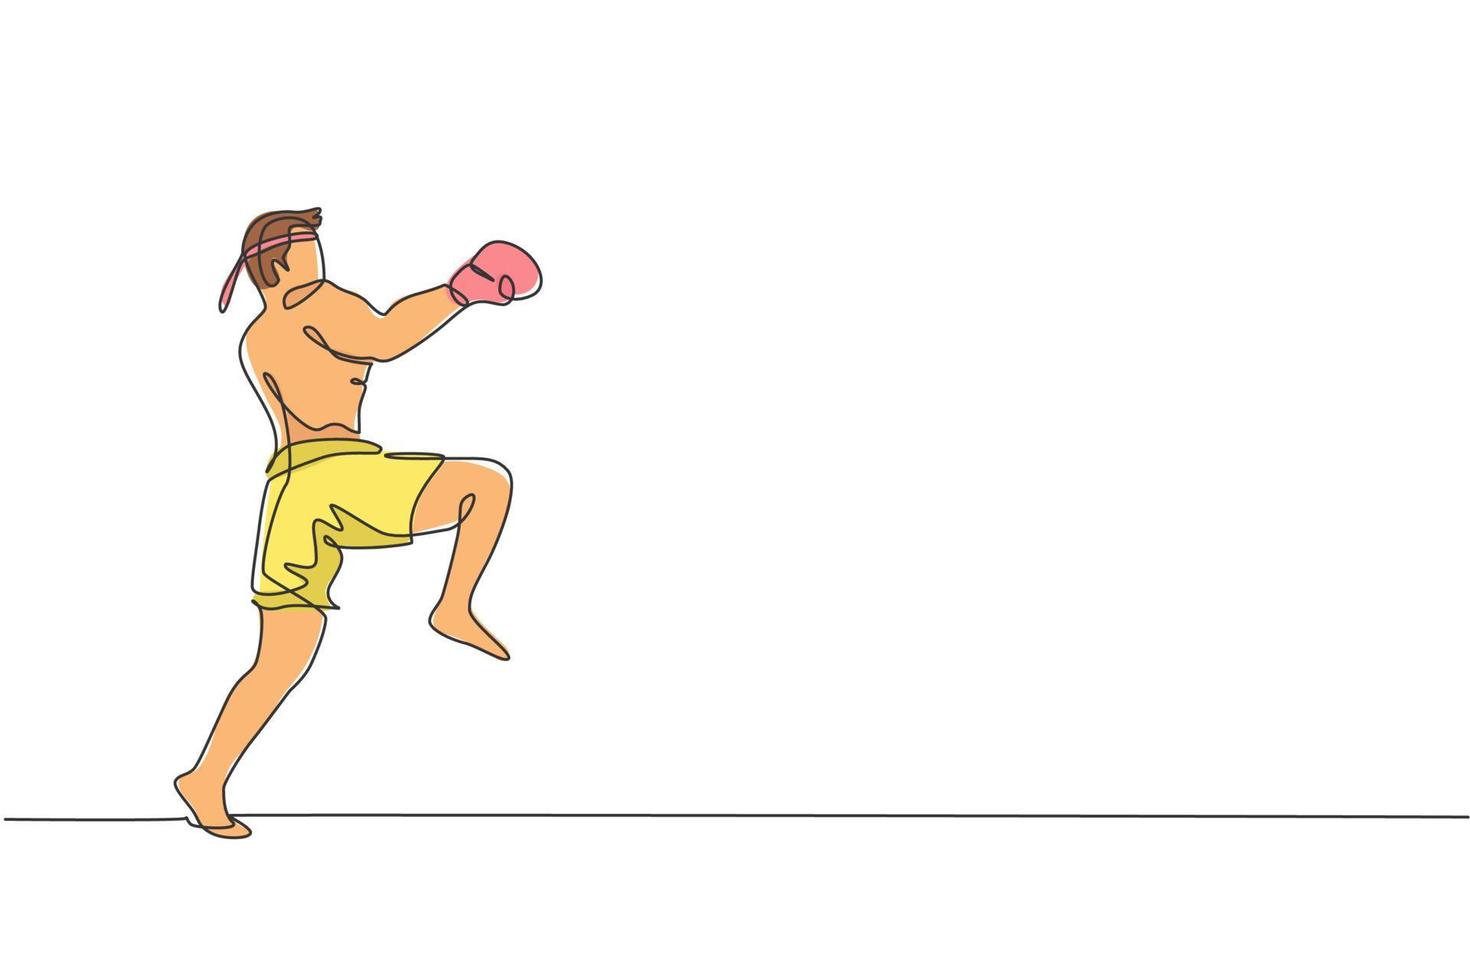 en kontinuerlig linjeteckning av ung sportig muay thai boxerman som förbereder sig för att slåss, ställningspark på boxarenan. fighting sport spelkoncept. dynamisk enda rad rita design grafisk vektorillustration vektor